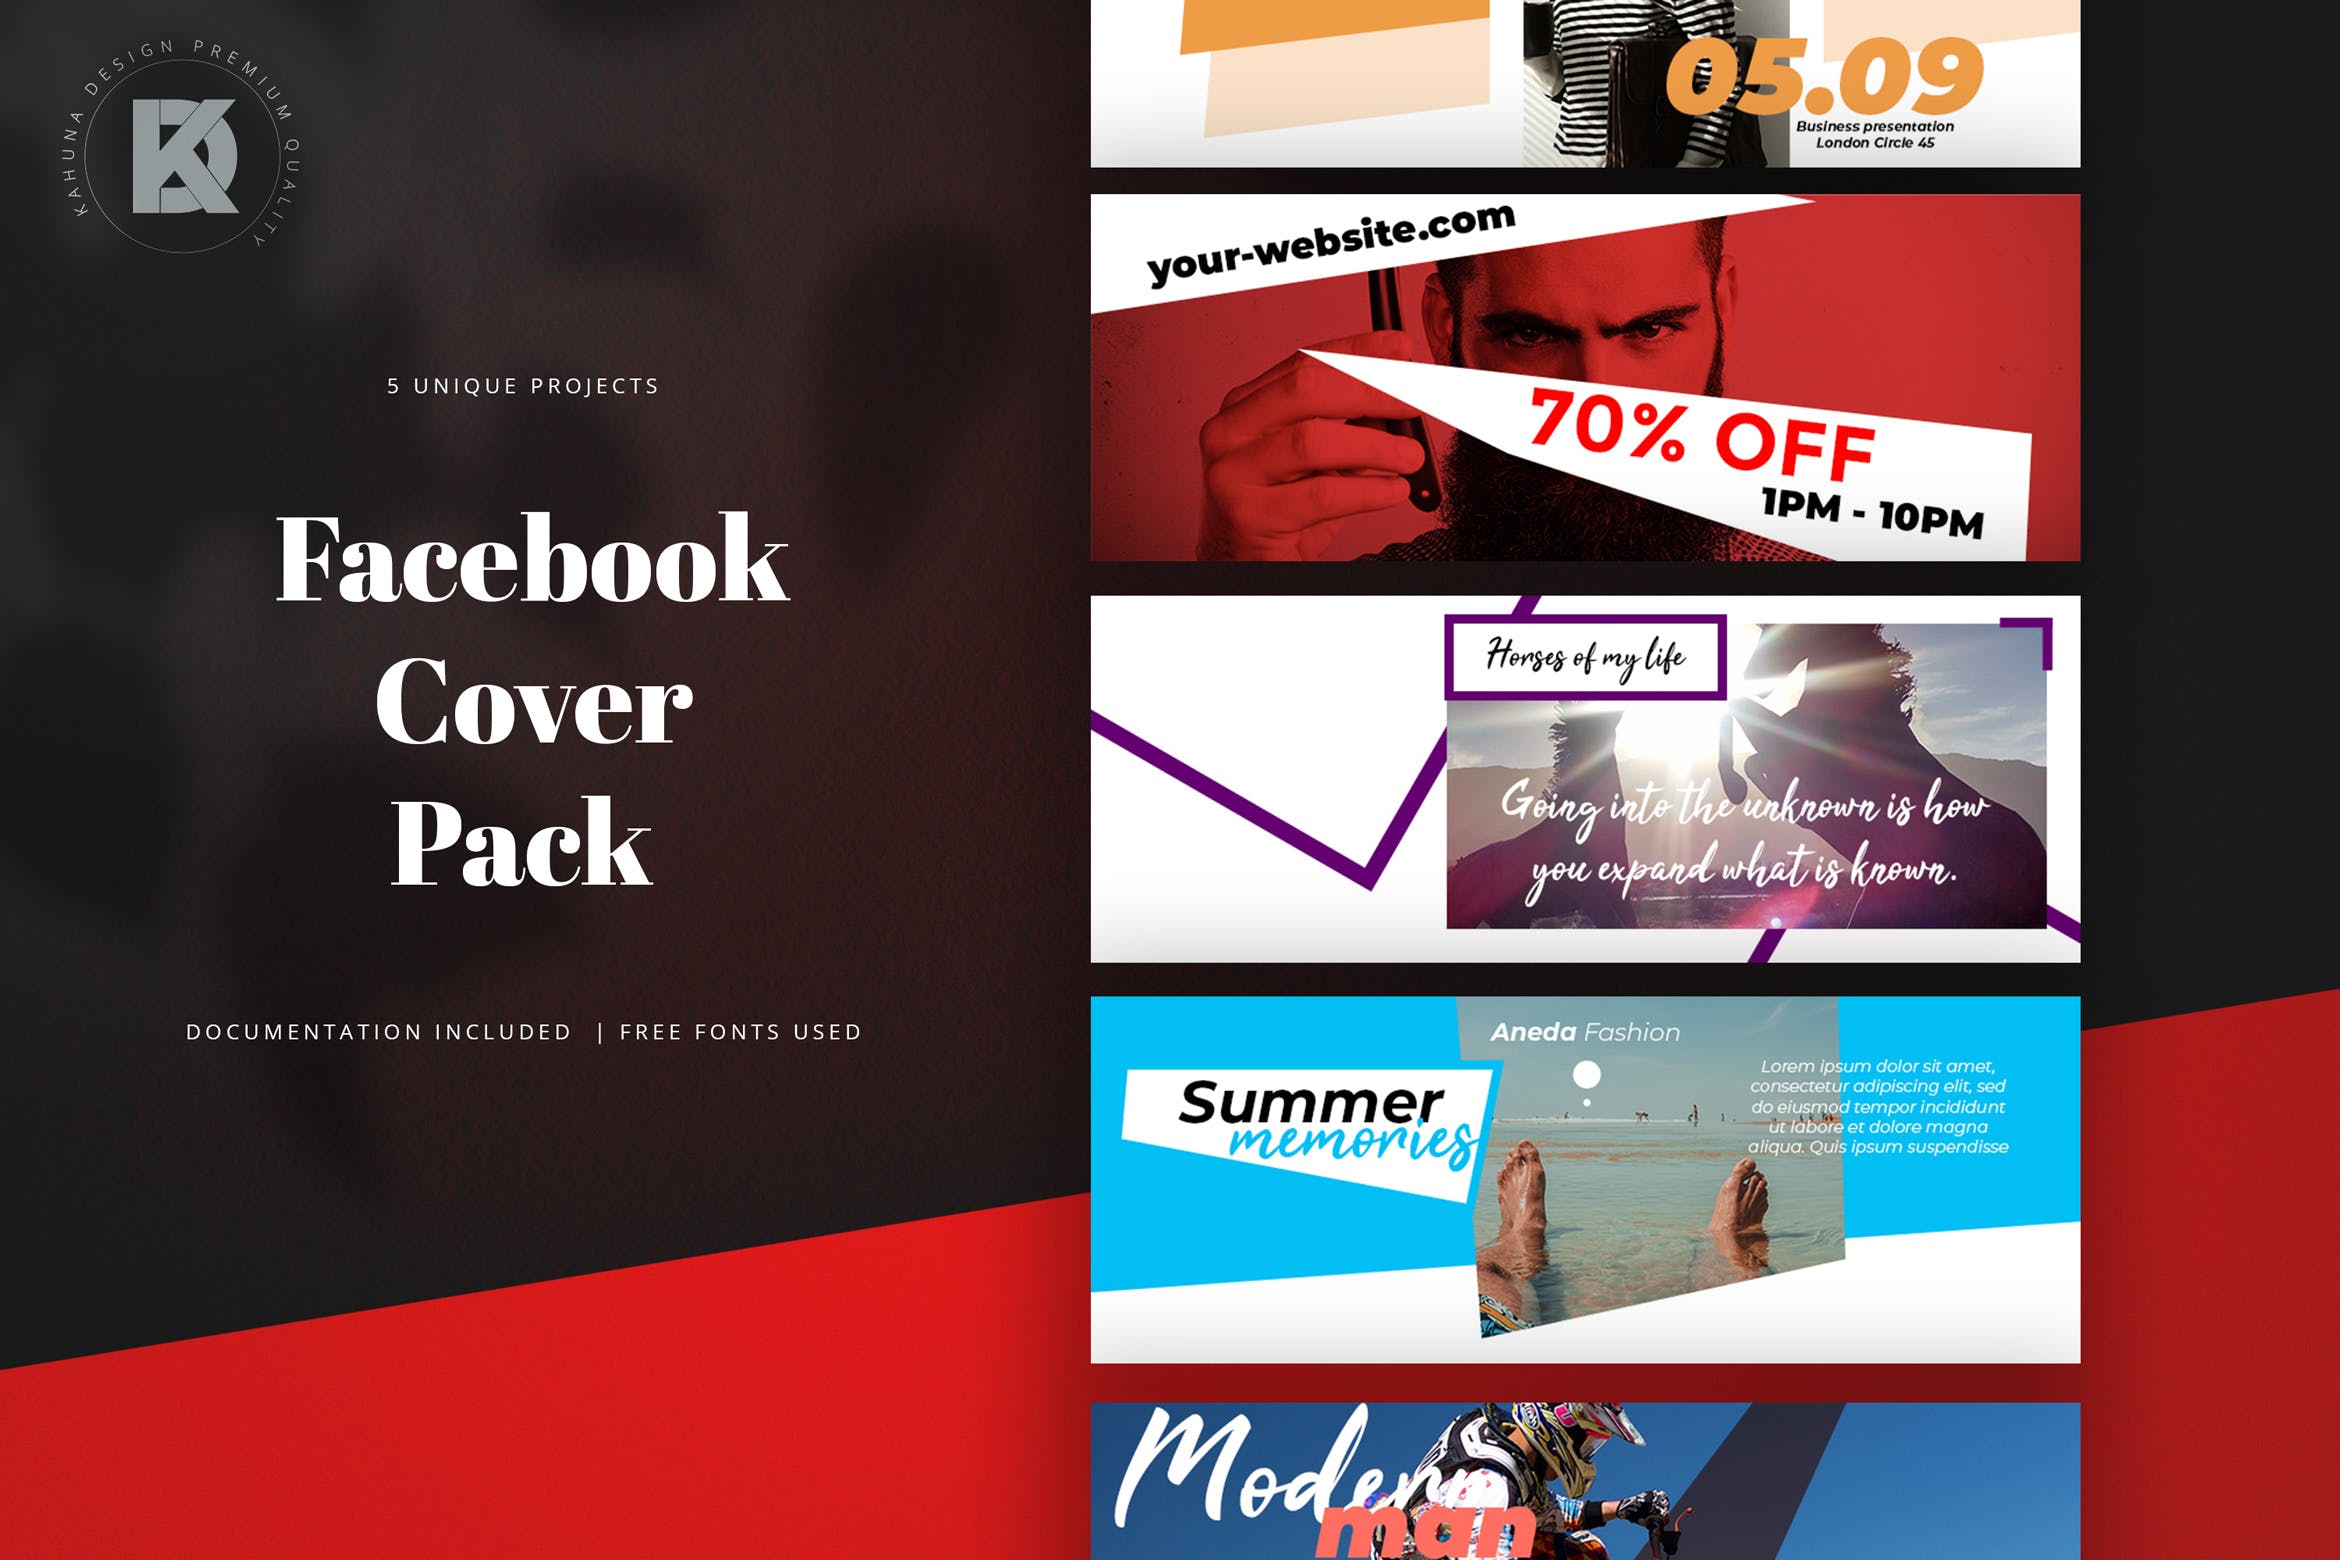 5款Facebook主页促销广告封面设计模板素材库精选 Facebook Cover Pack插图